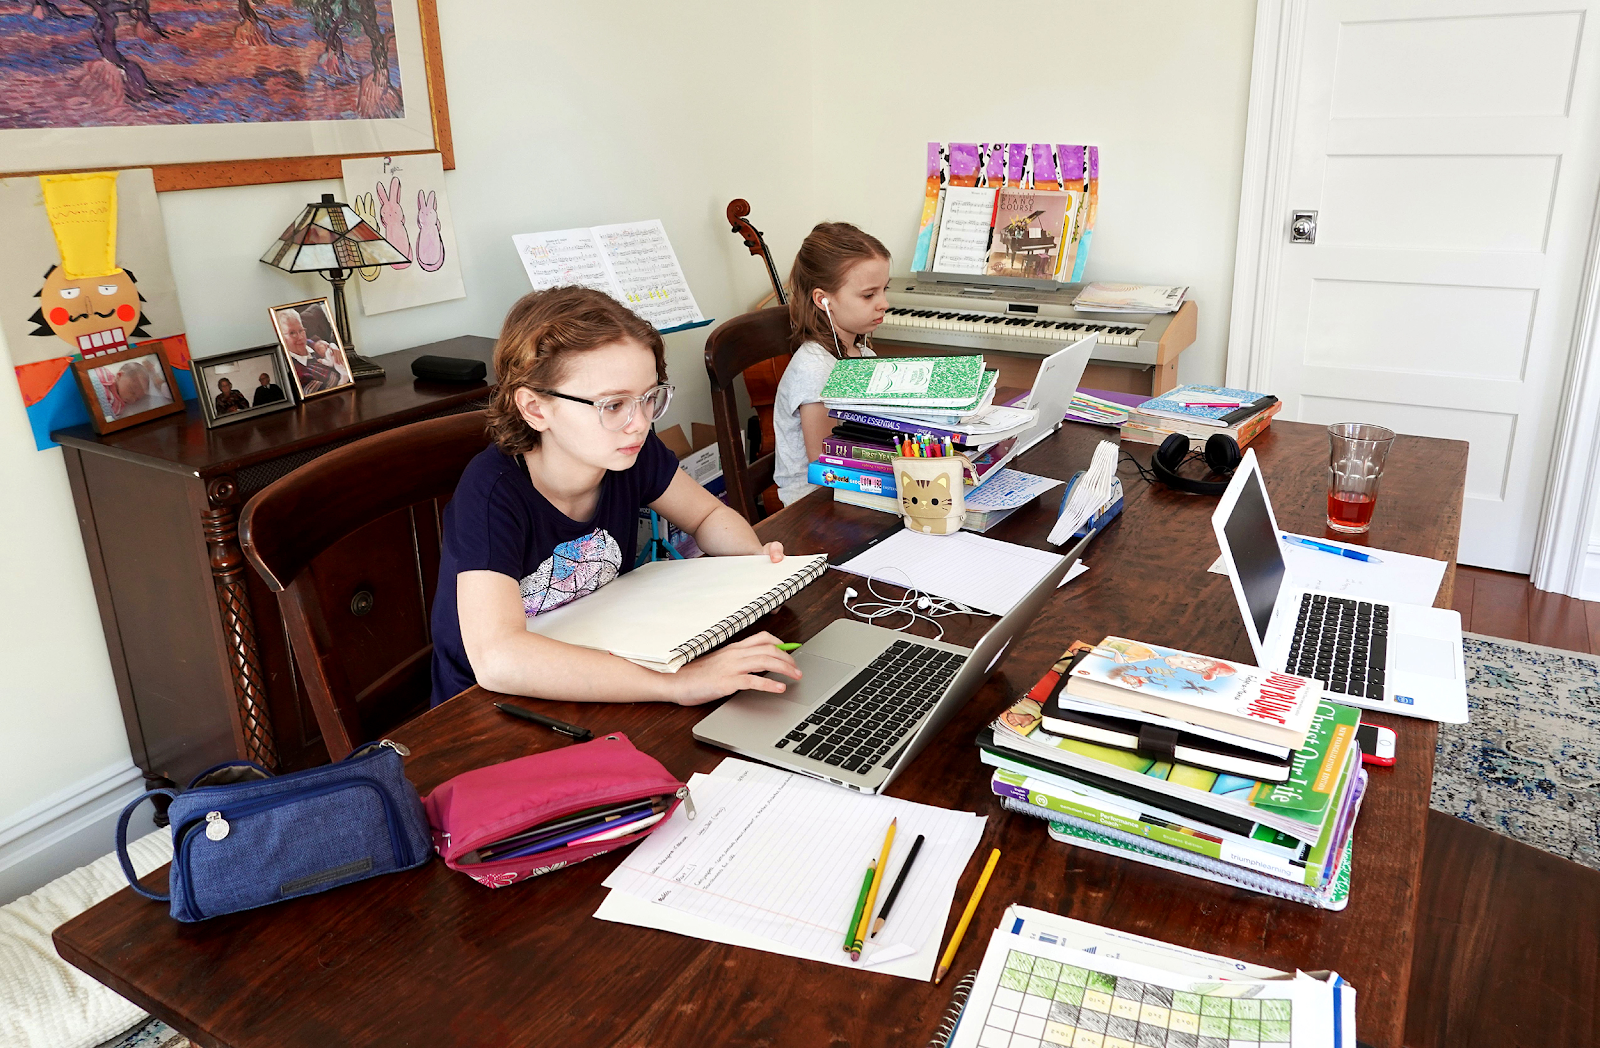 حدد مساحة في المنزل مخصصة للدراسة سواء كان مكتبًا أم طاولة وكرسي أم غيرهم